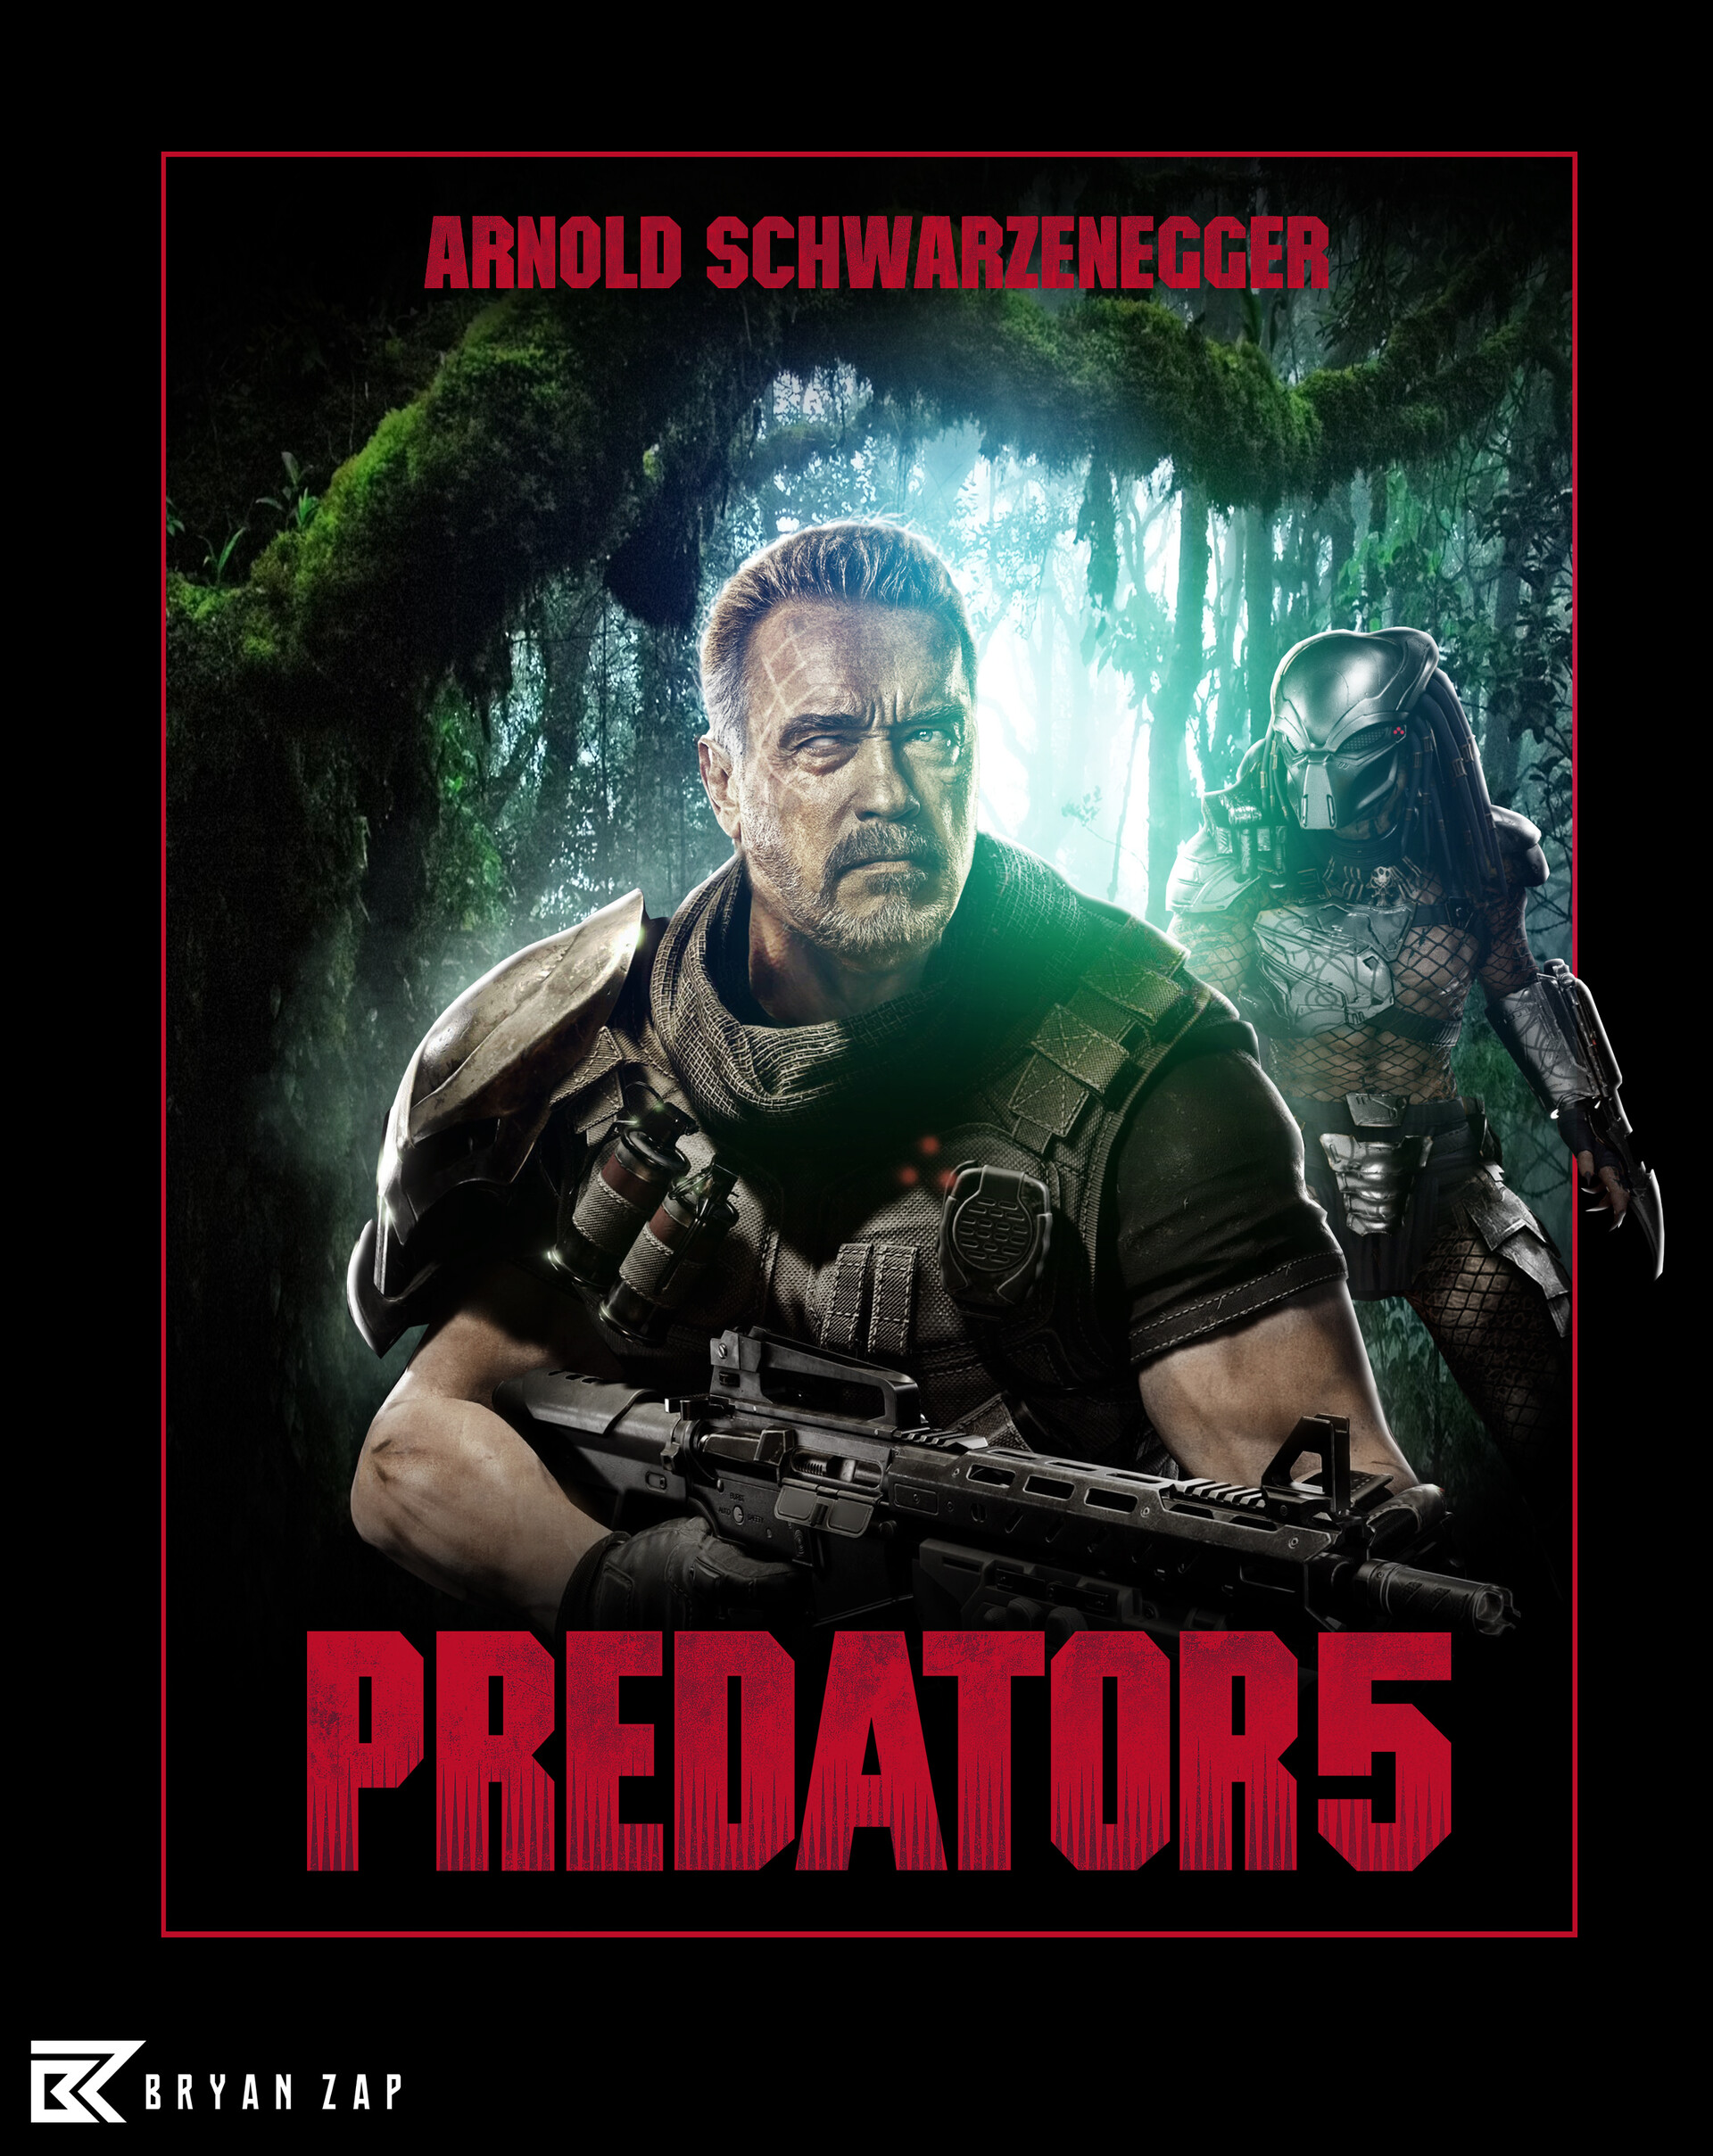 The Predators Movie' Poster by Predator